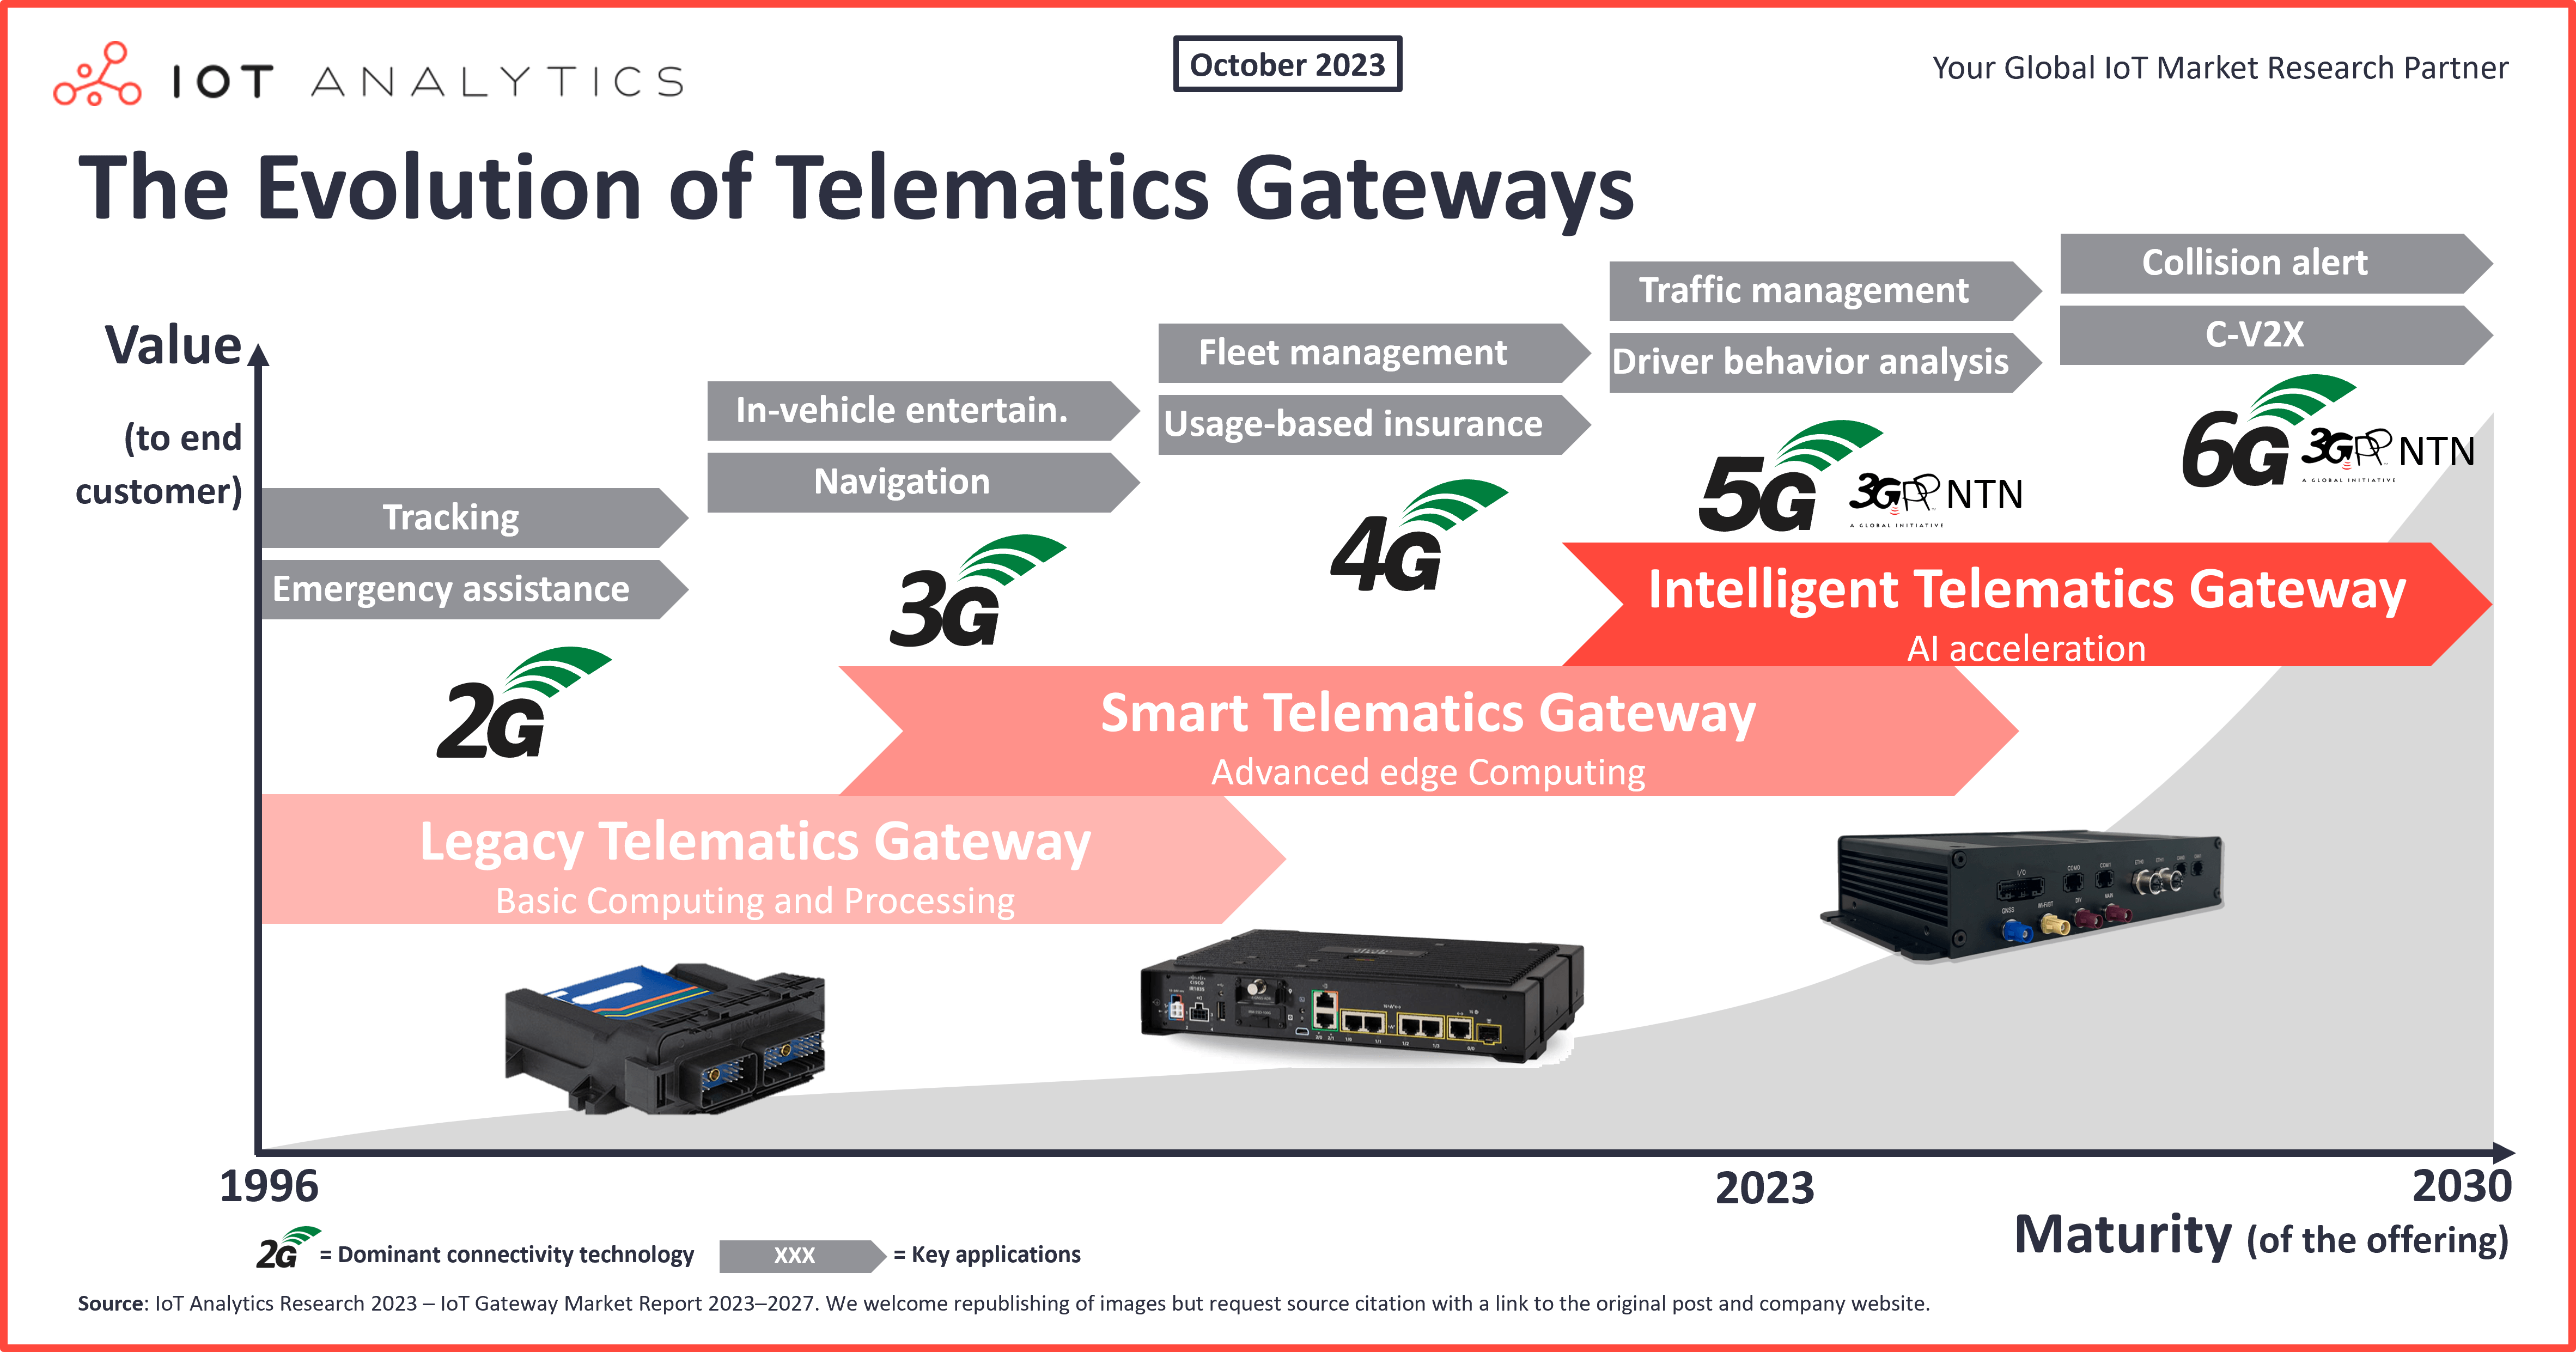 The evolution of telematics gateways